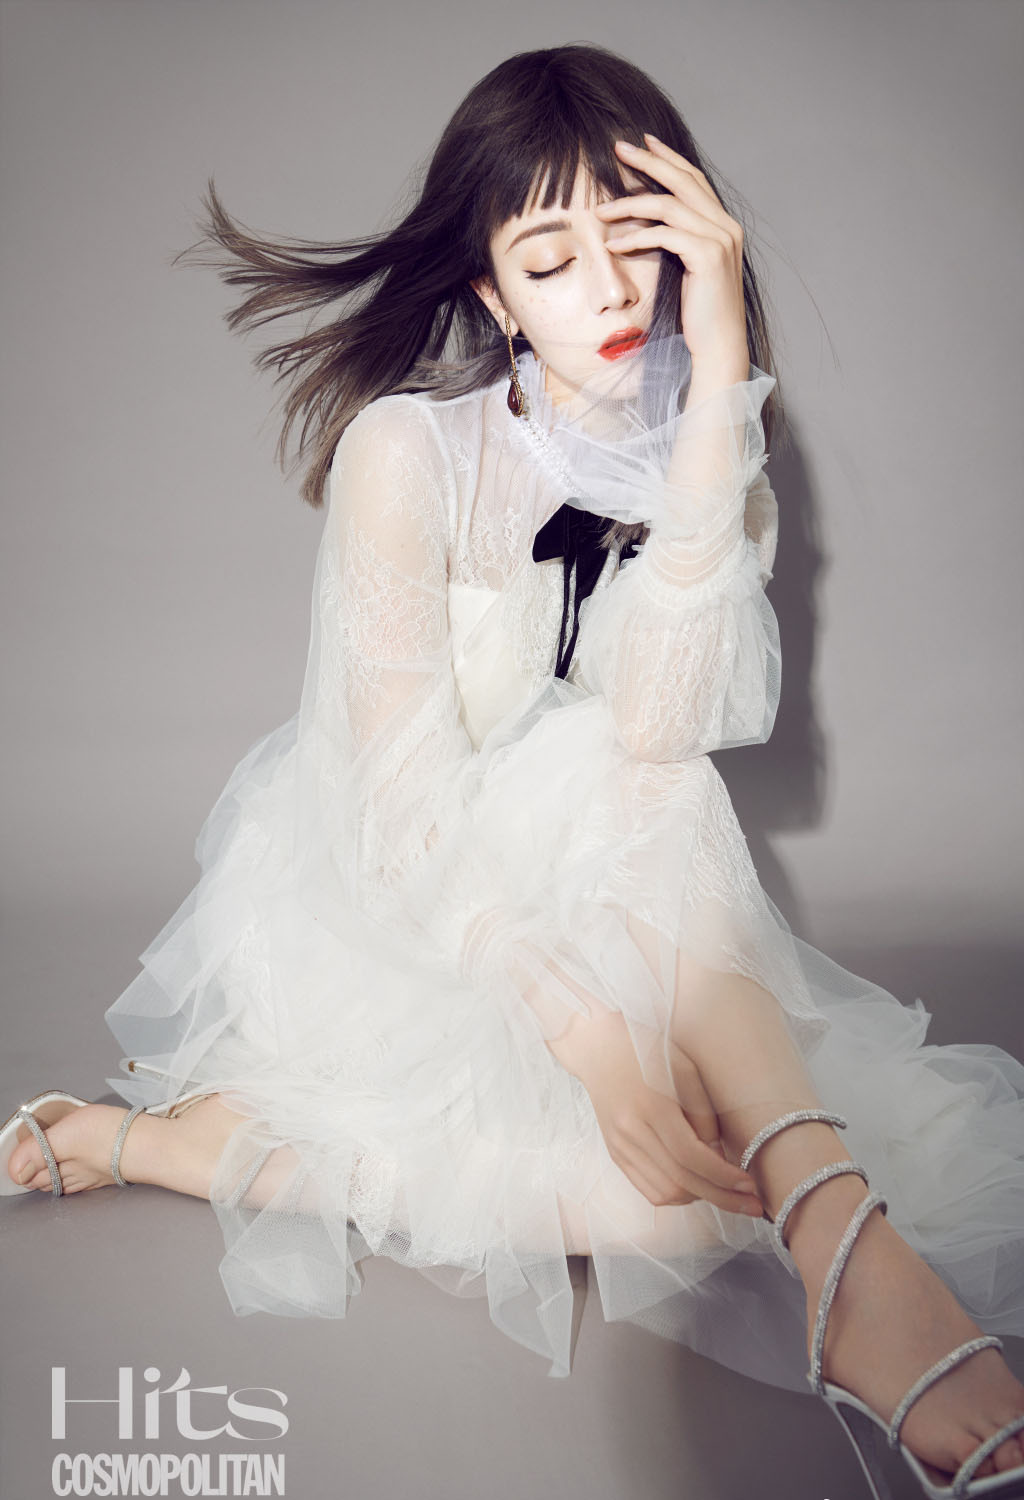 迪丽热巴齐刘海长发发型搭配“雀斑妆”酷美时尚写真图片